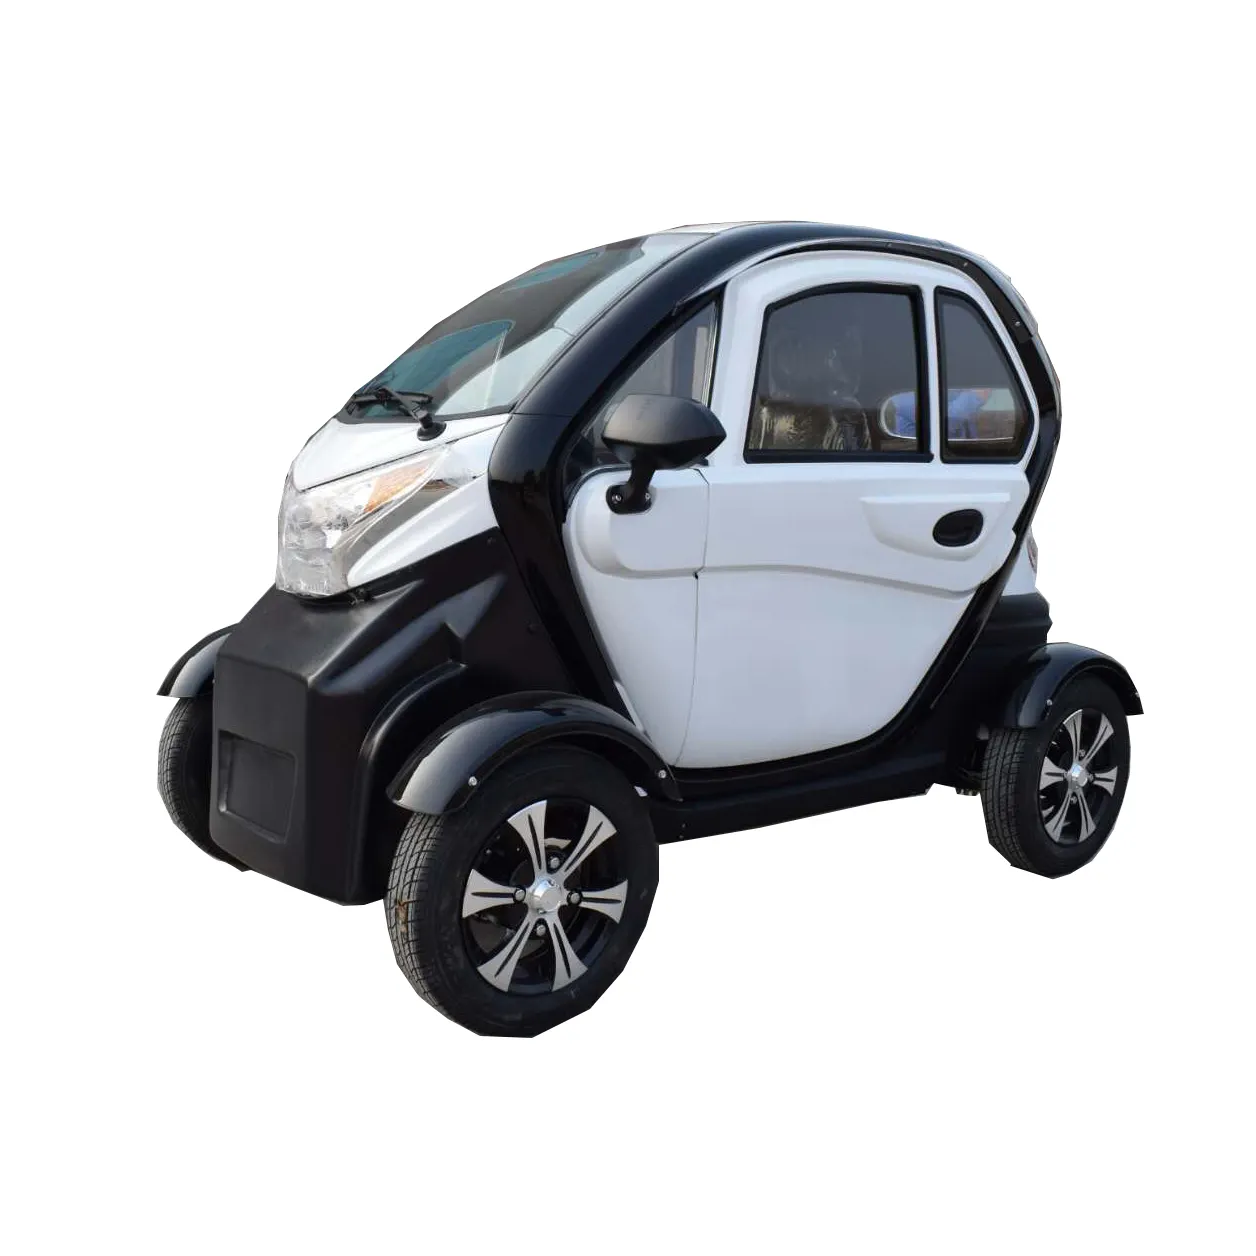 Mini elektrikli araba yetişkin moda motosiklet dört tekerlekli elektrikli araba 3 kişi elektrikli yolcu araba